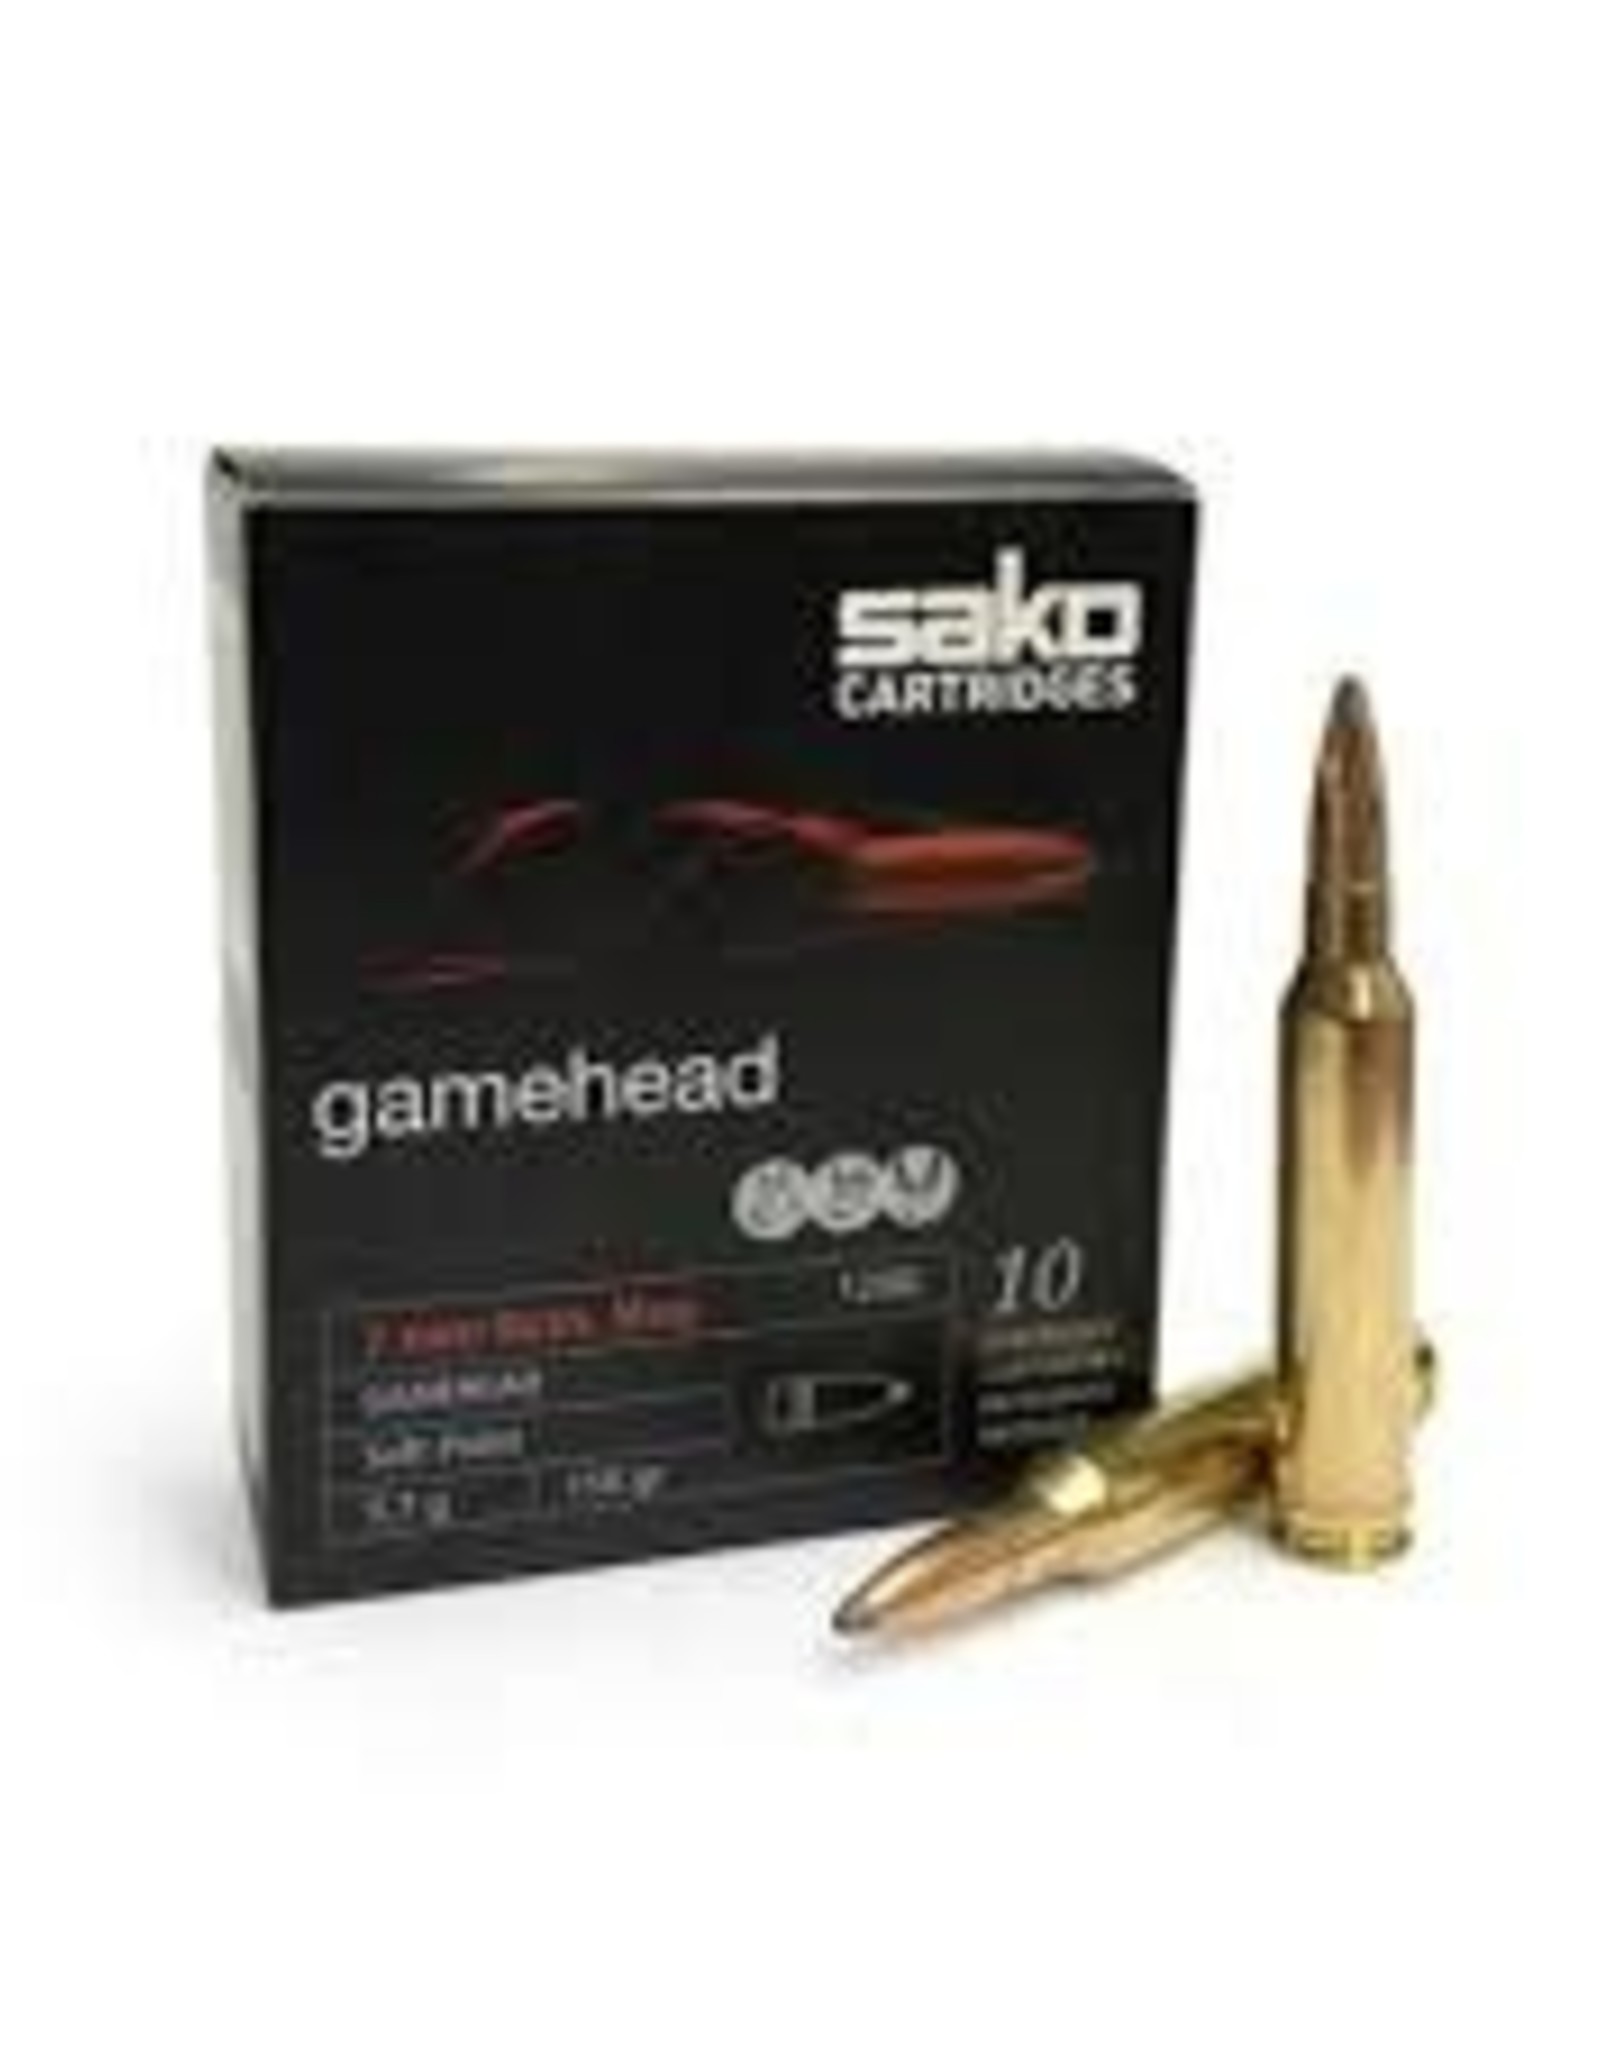 Sako Gamehead 300 Win 180 GR (10 Pack)